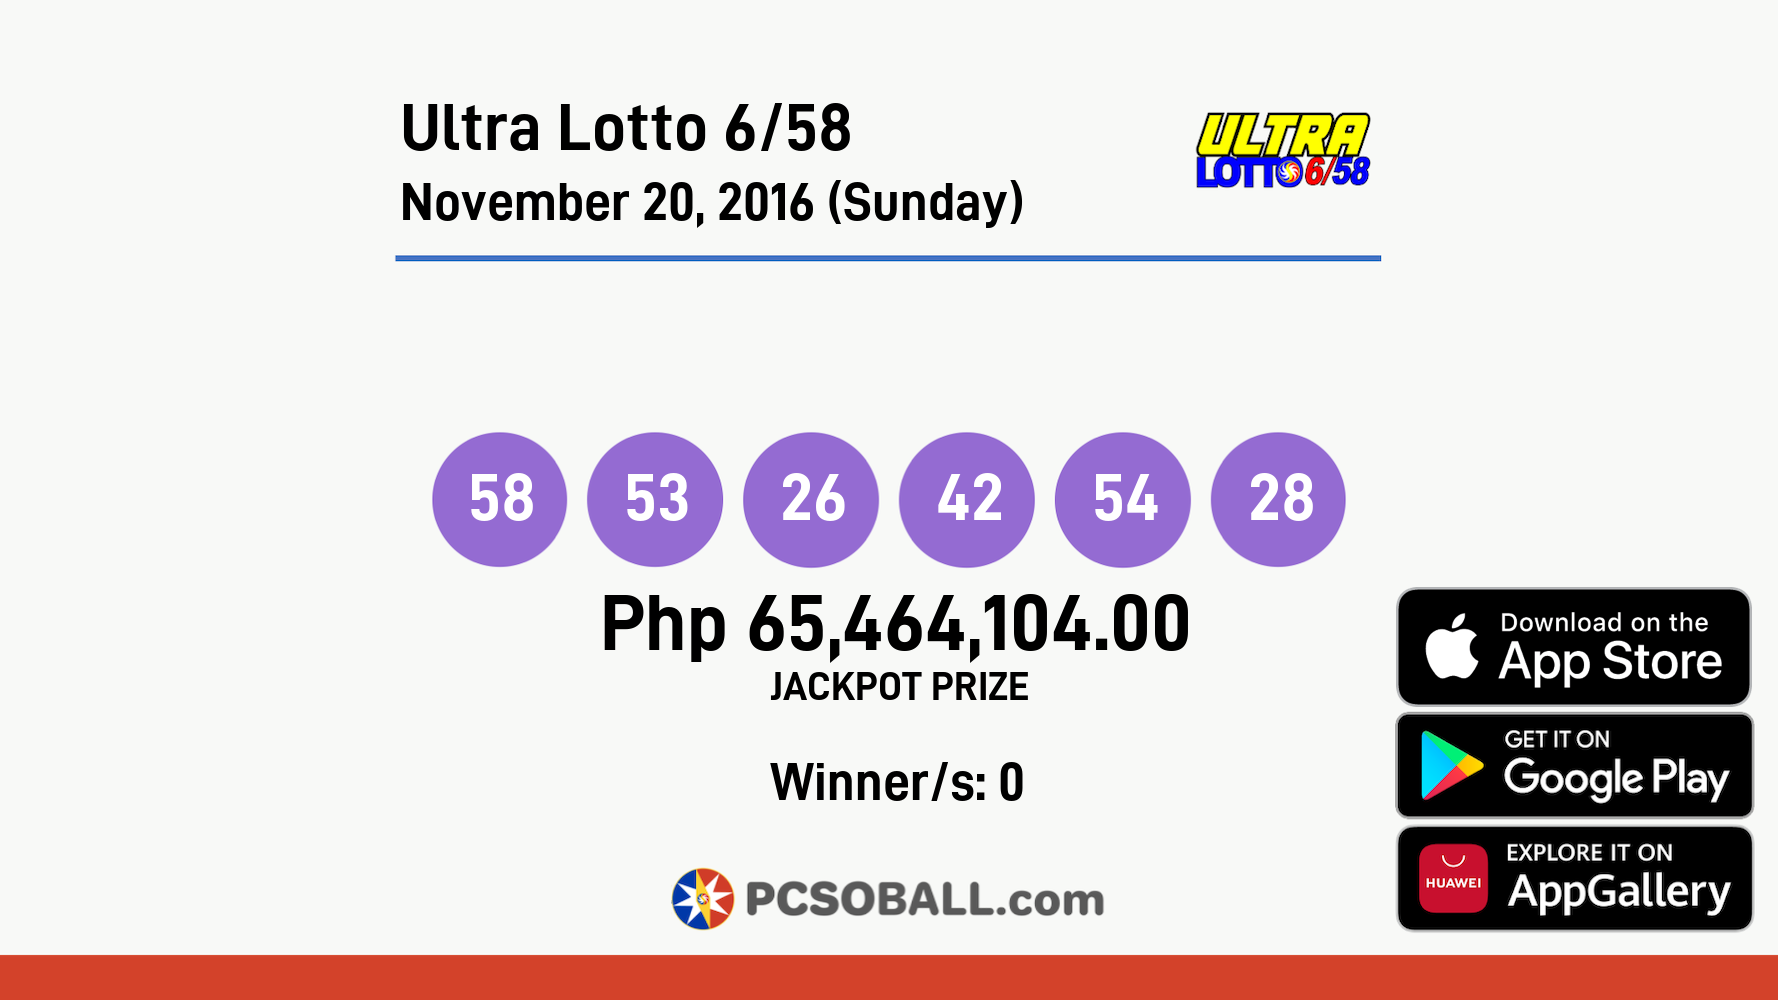 Ultra Lotto 6/58 November 20, 2016 (Sunday) Result